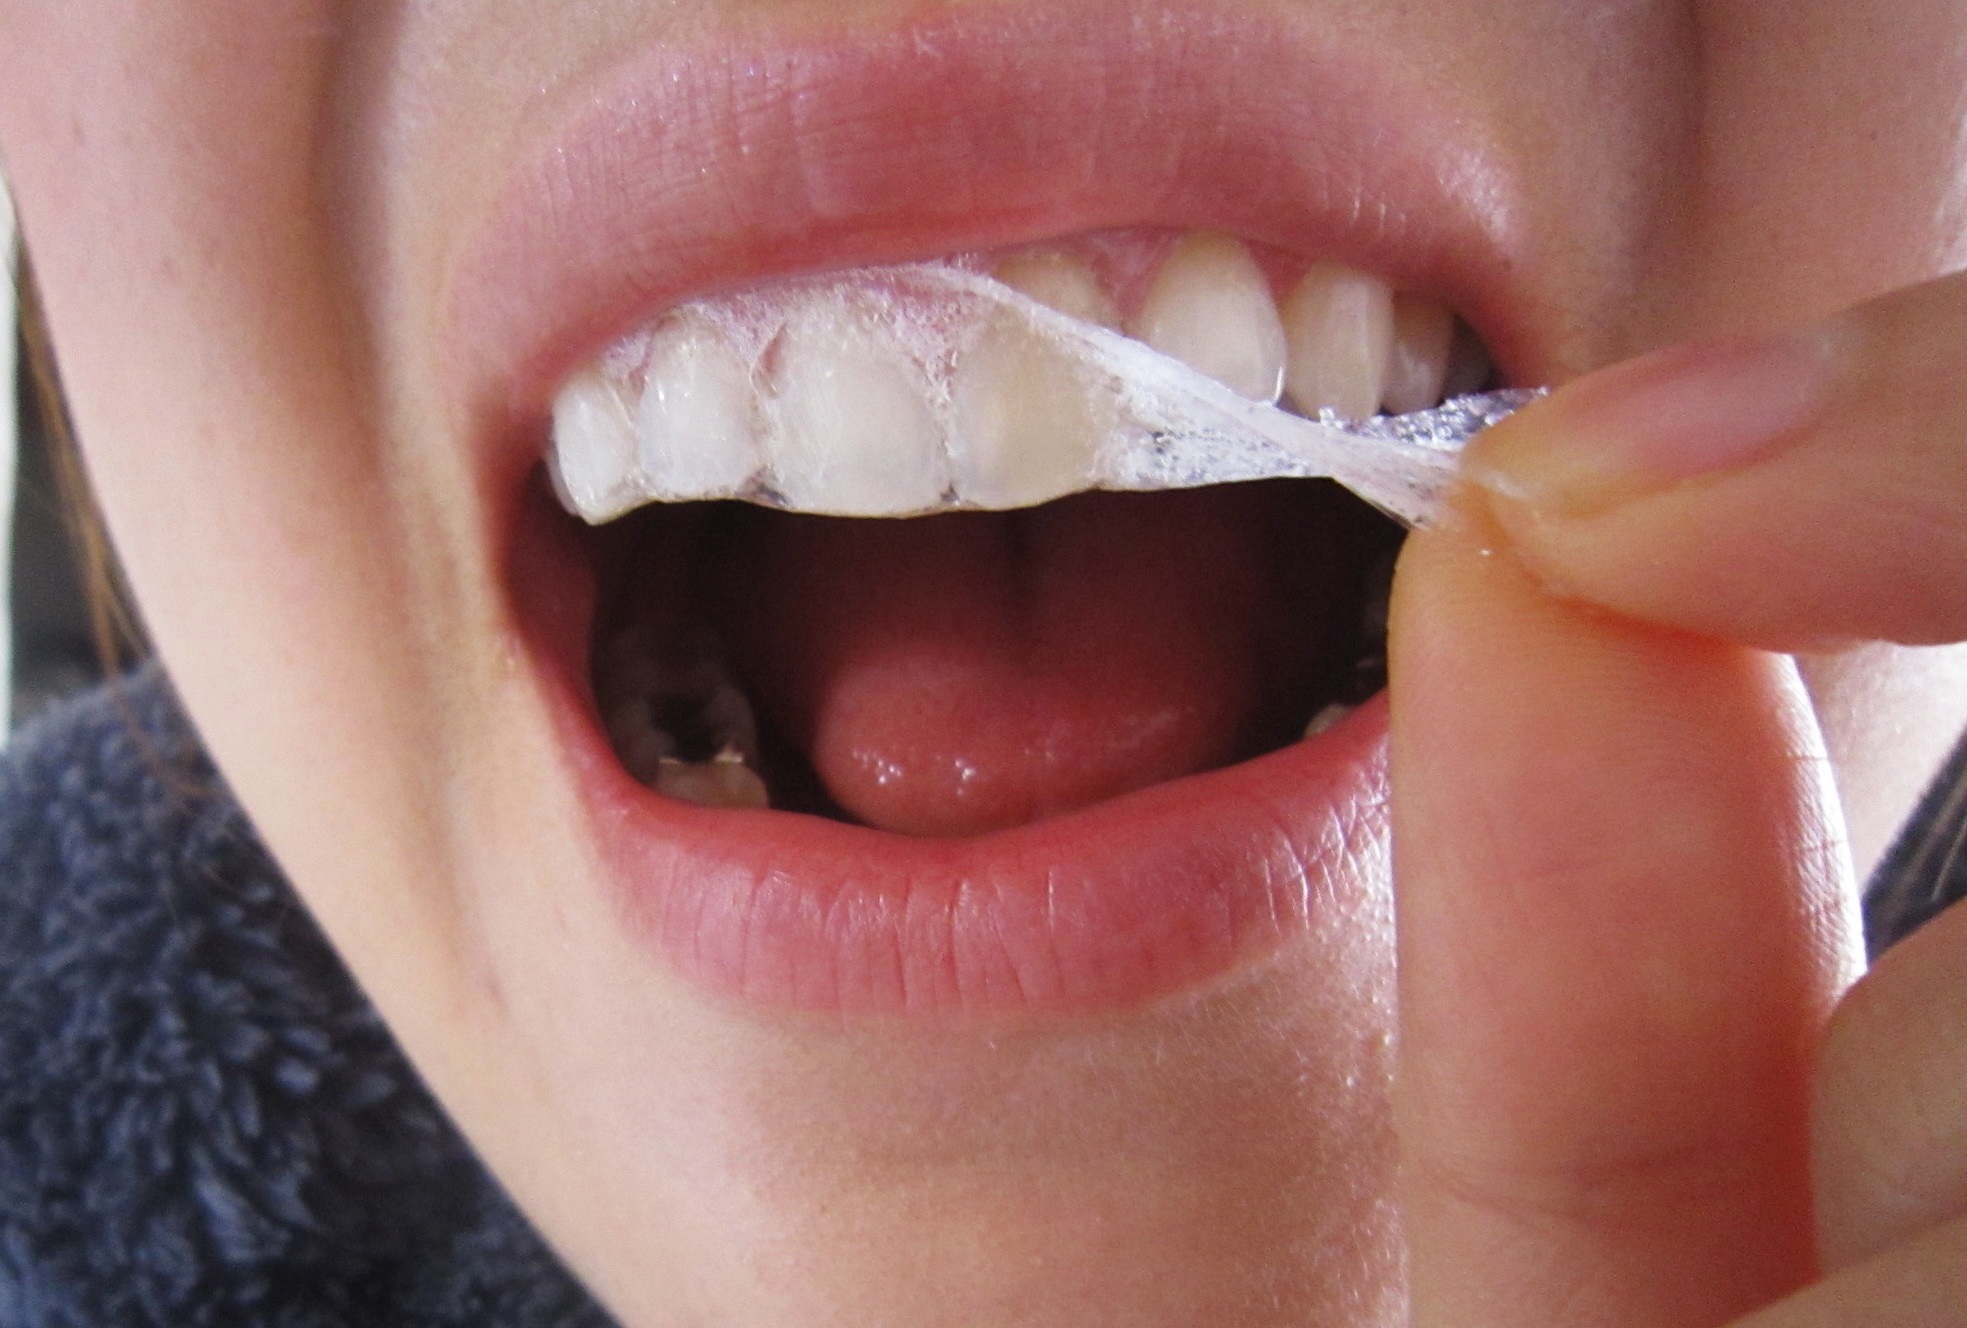 lưu ý tẩy trắng răng, lưu ý khi tẩy trắng răng, lưu ý sau khi tẩy trắng răng, lưu ý khi tẩy trắng răng tại nhà, những lưu ý khi tẩy trắng răng, những lưu ý khi tẩy trắng răng tại nhà, lưu ý trước khi tẩy trắng răng, tẩy trắng răng, giá tẩy trắng răng, có nên tẩy trắng răng, cách tẩy trắng răng tại nhà, những điều cần lưu ý sau khi tẩy trắng răng, lưu ý khi đi tẩy trắng răng, các lưu ý khi tẩy trắng răng, cần lưu ý khi tẩy trắng răng 